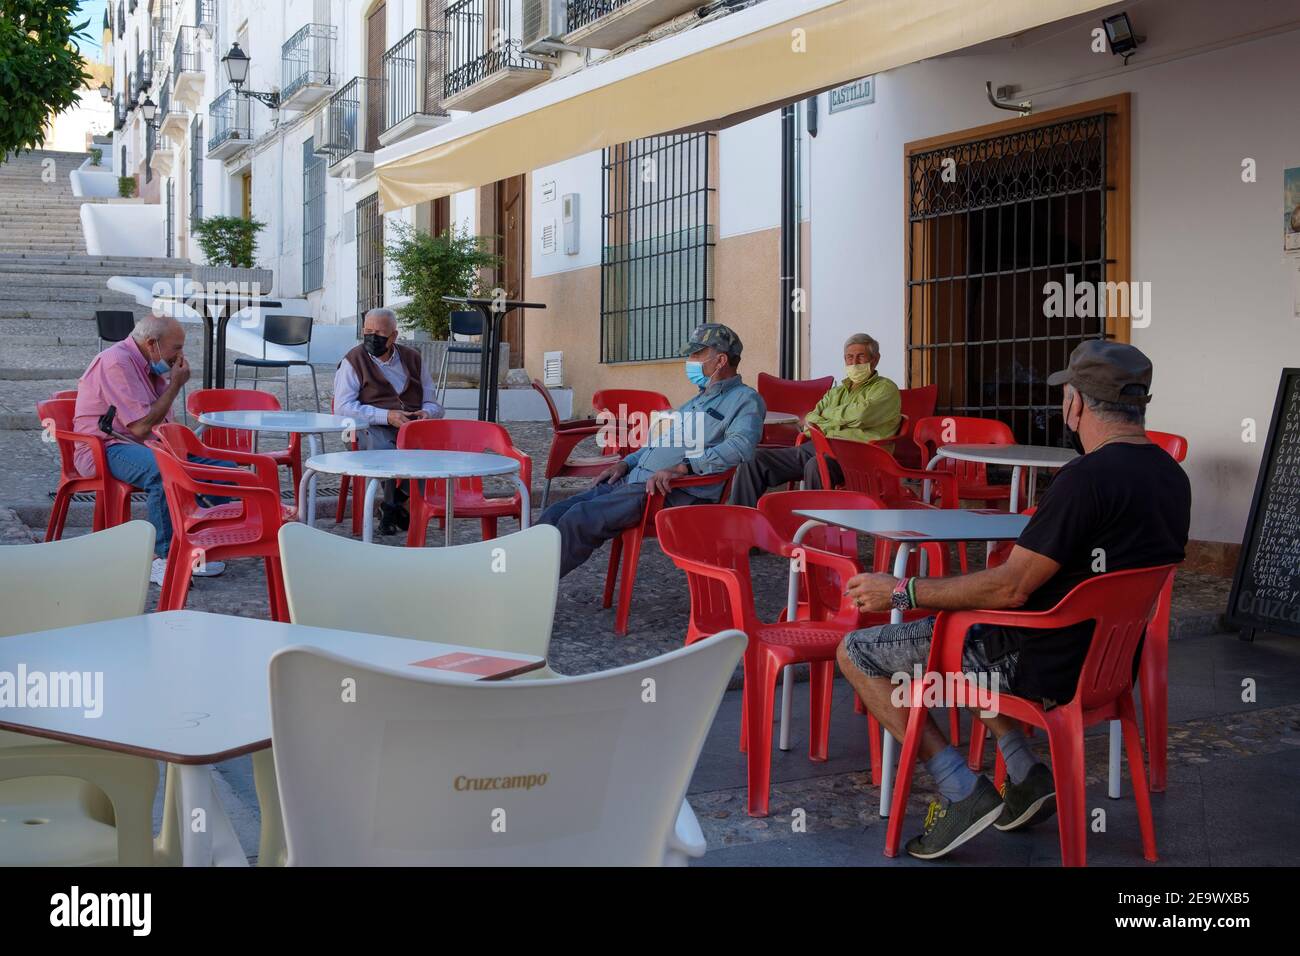 Des hommes âgés portant des masques faciaux, assis à l'extérieur du bar du village fermé pendant la pandémie de Covid à l'été 2020. Carcabuey, Andalousie, Espagne Banque D'Images